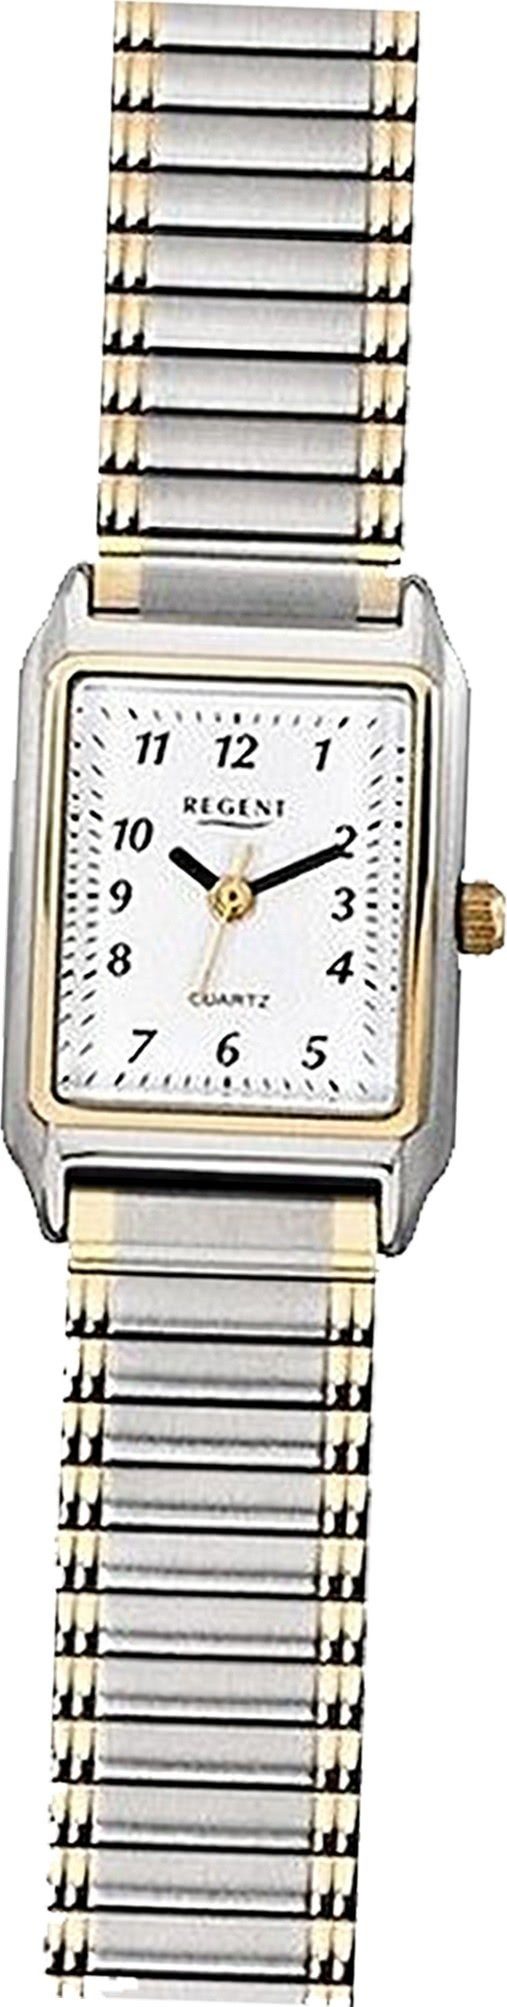 Damenuhr Analog, F-460 Quarzuhr 26mm) gold, Regent Regent eckiges Uhr Damen Gehäuse, klein (ca. Metall silber, Metallarmband